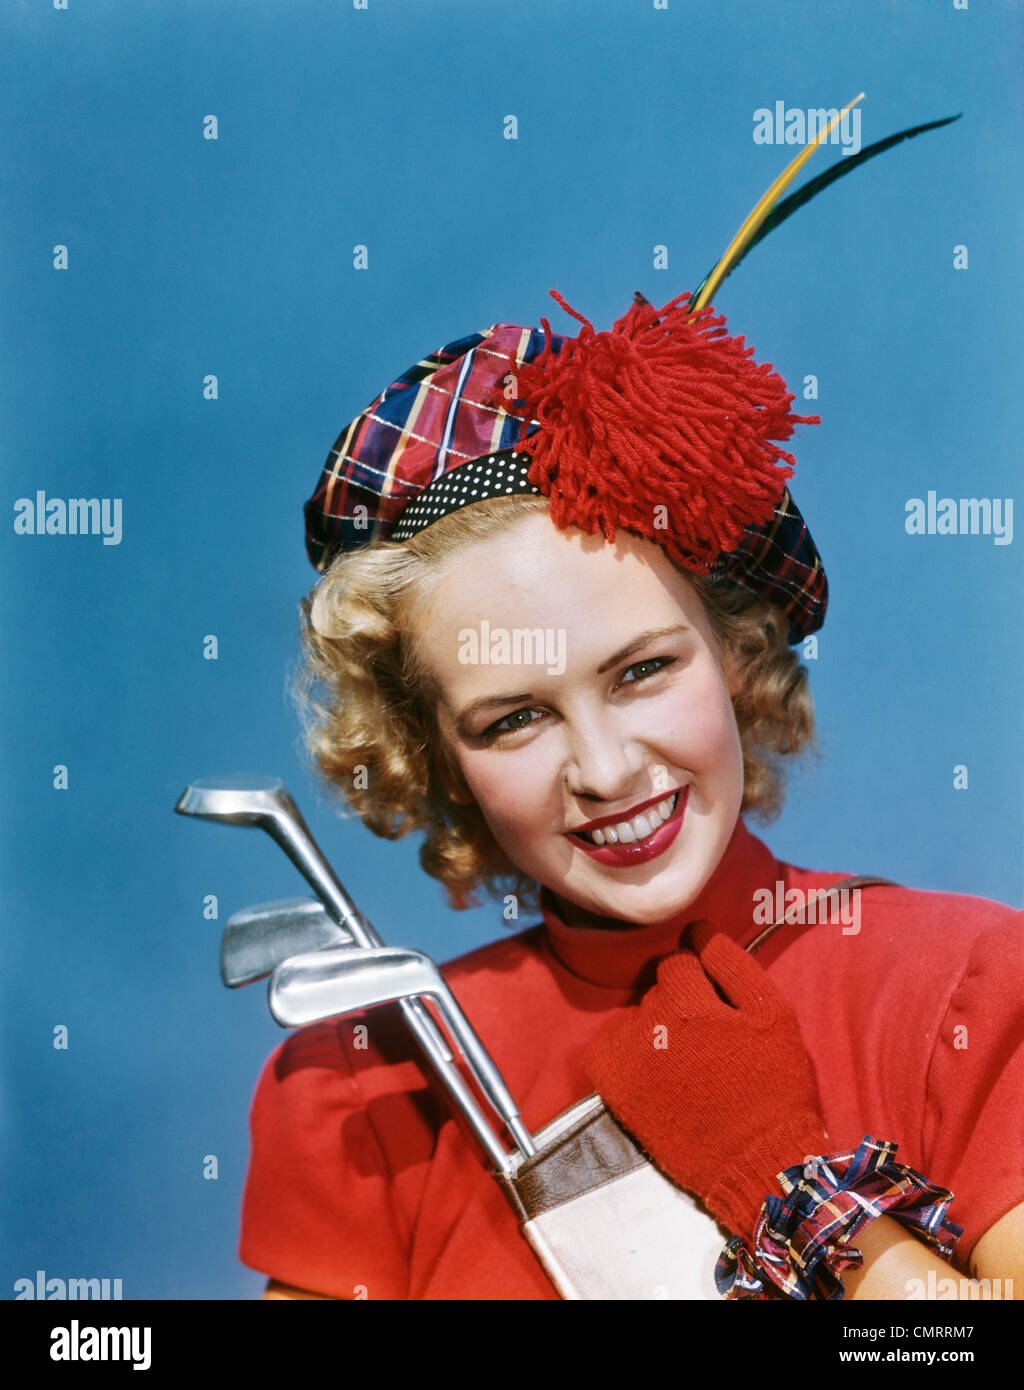 Negli anni quaranta anni cinquanta ritratto sorridente donna bionda che indossa PLAID TAM Guanti rossi holding club di golf guardando la fotocamera Foto Stock